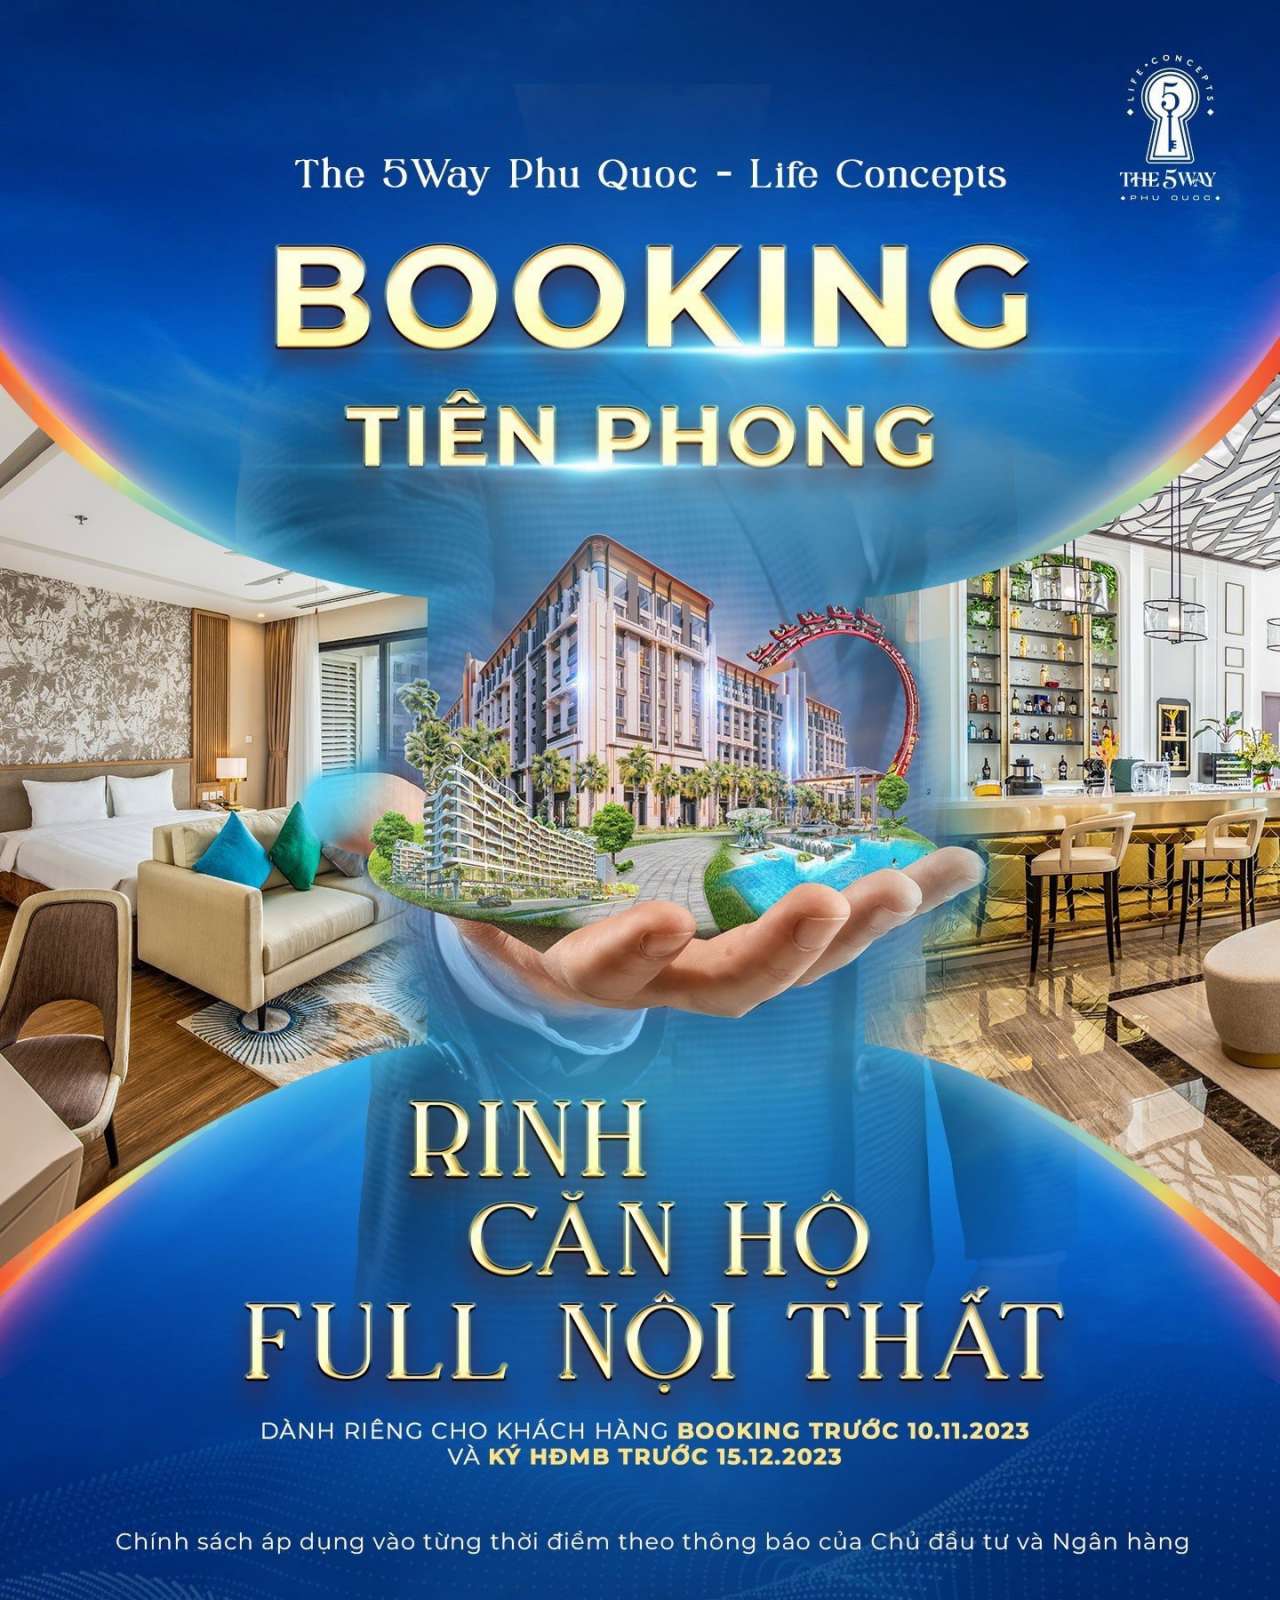 Booking tiên phong - Rinh full nội thất